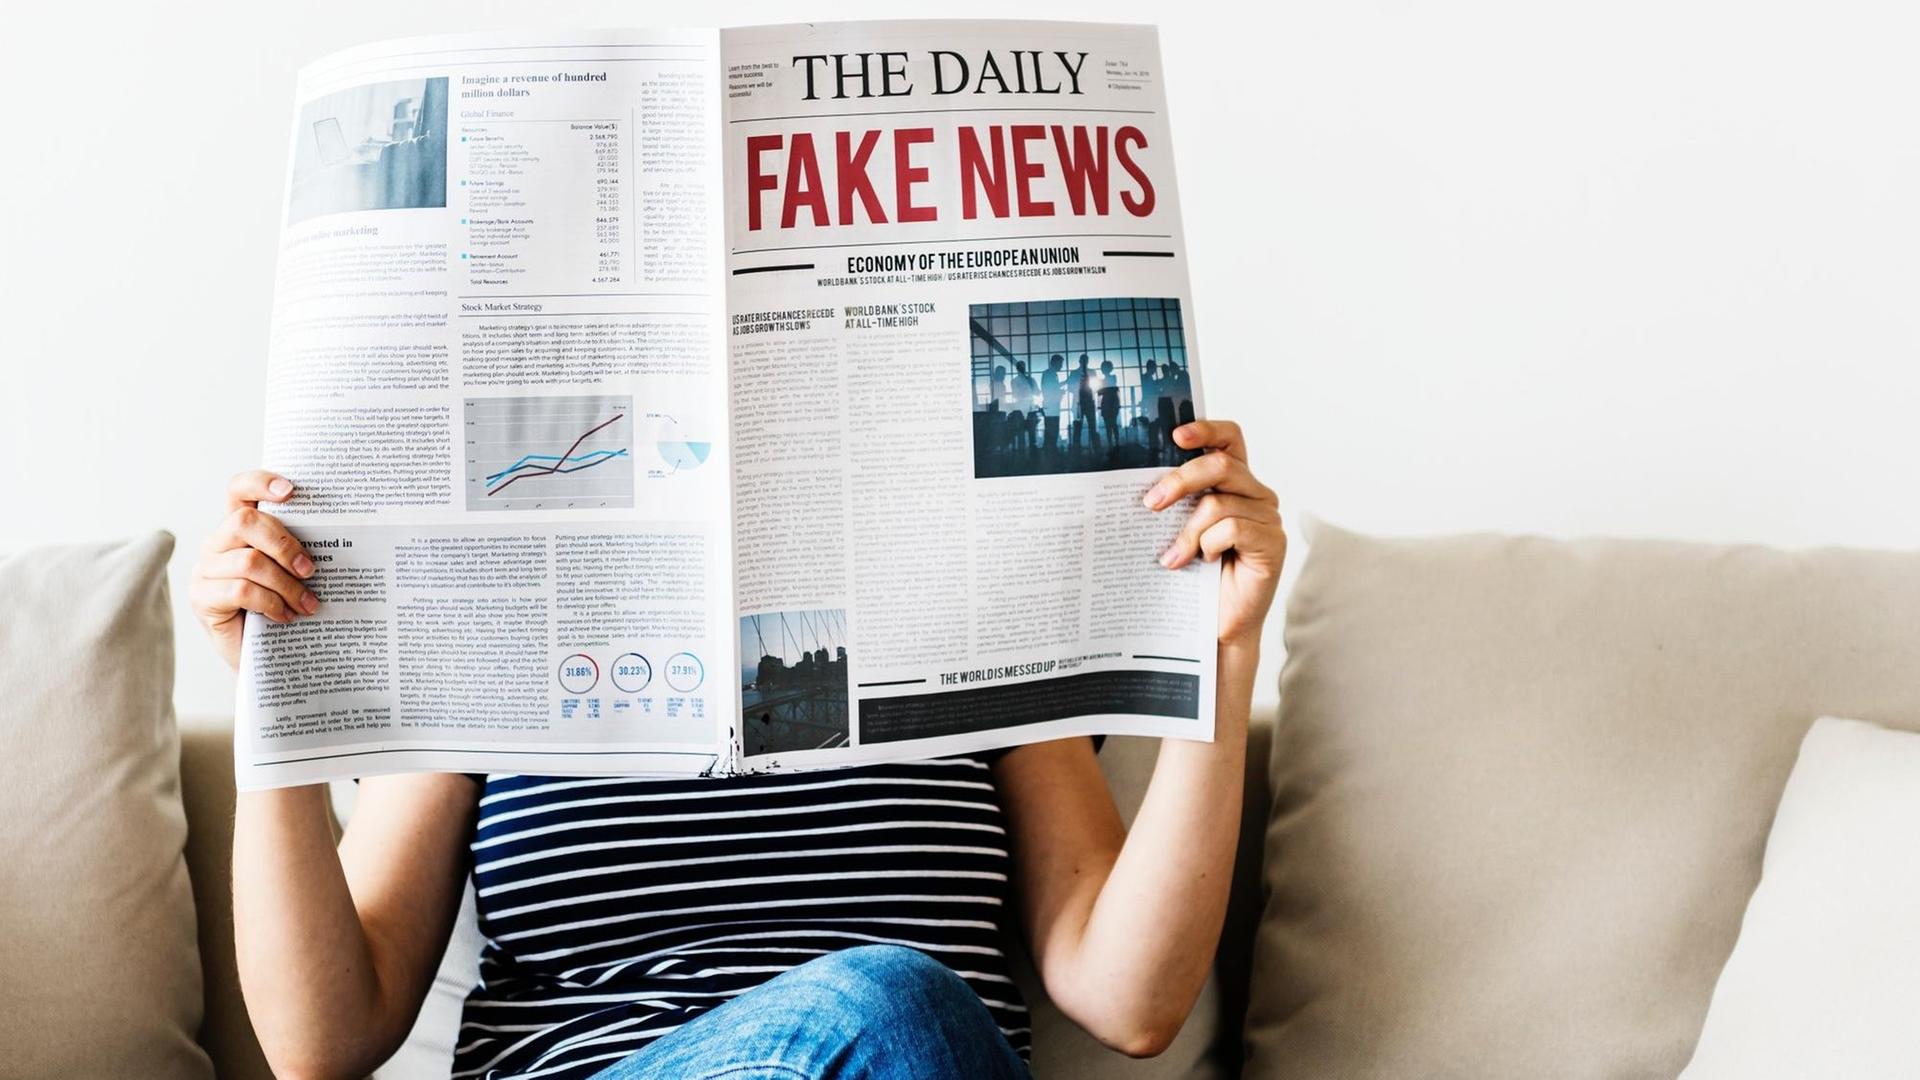 Eine Frau sitzt auf einem Sofa und liest die Zeitung "The Daily Fake News".